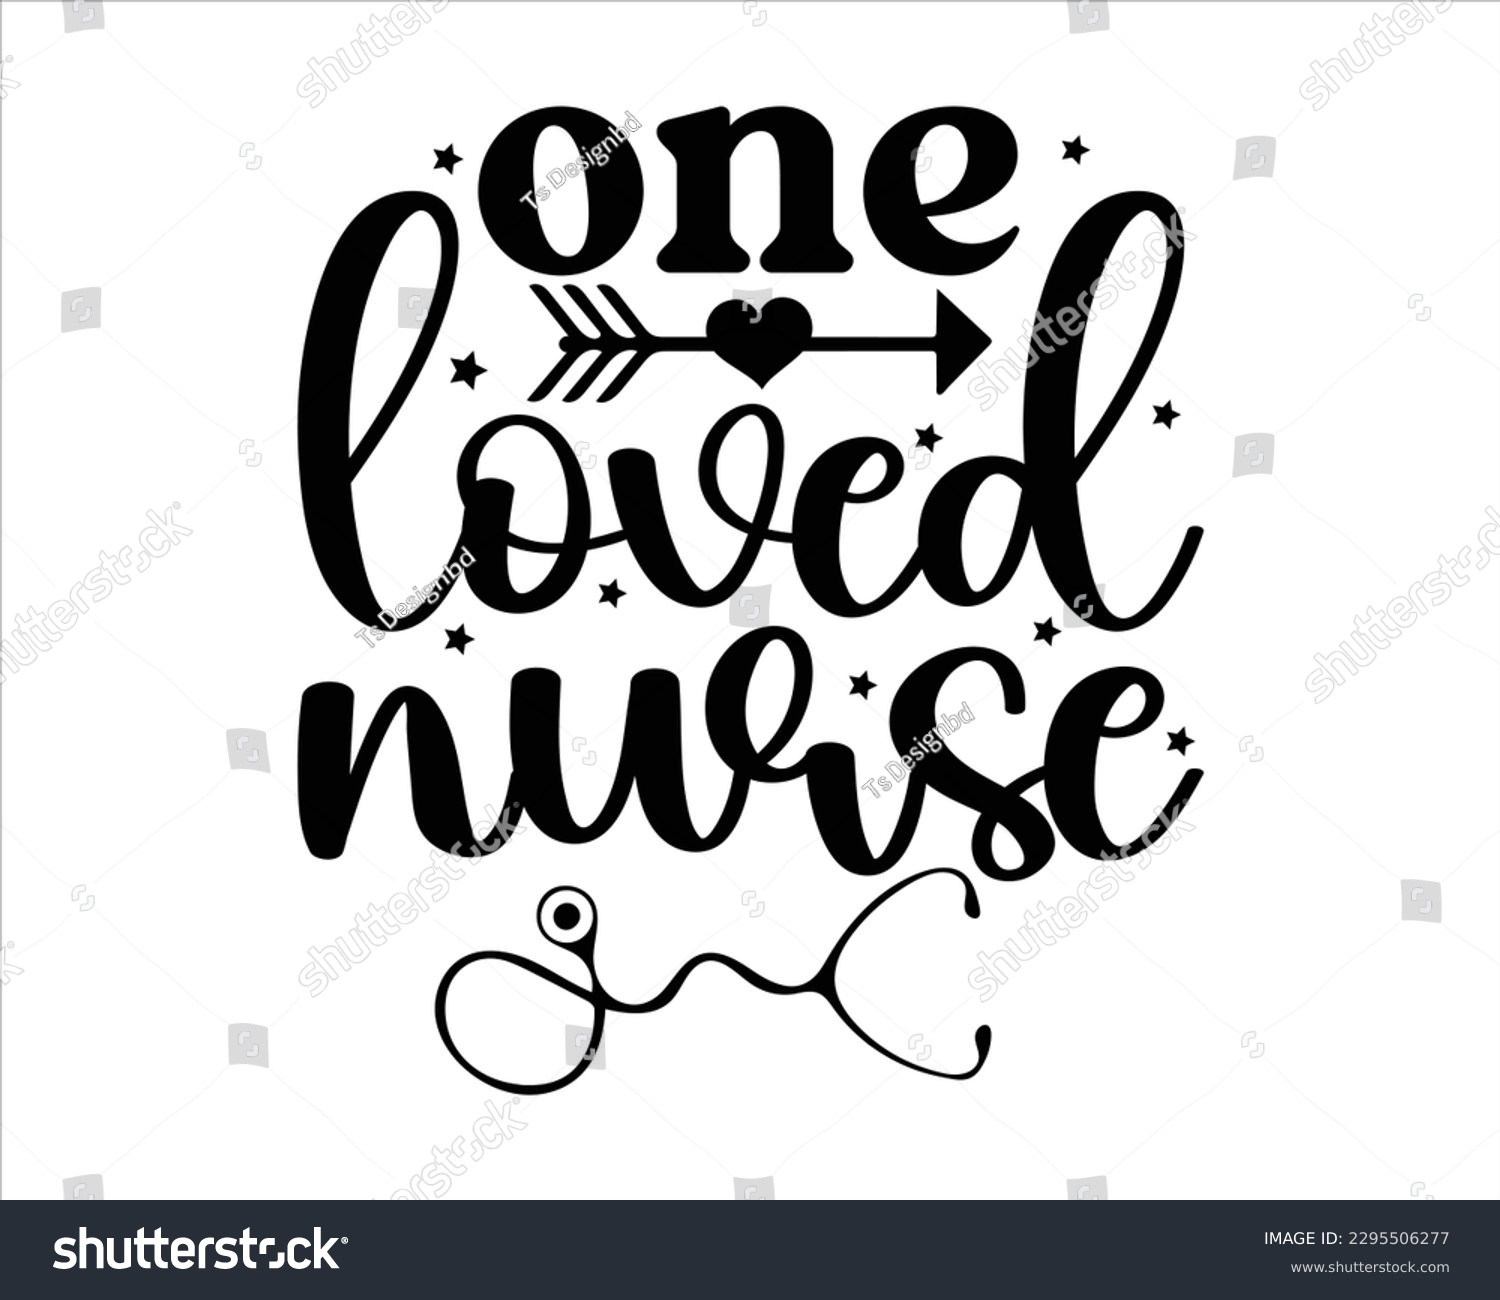 SVG of One Loved Nurse Svg Design,Nurse Design SVG ,nurse svg,nurse T shirt design, nurse cut file,nurse svg,Nurse Quotes SVG, Doctor Svg svg